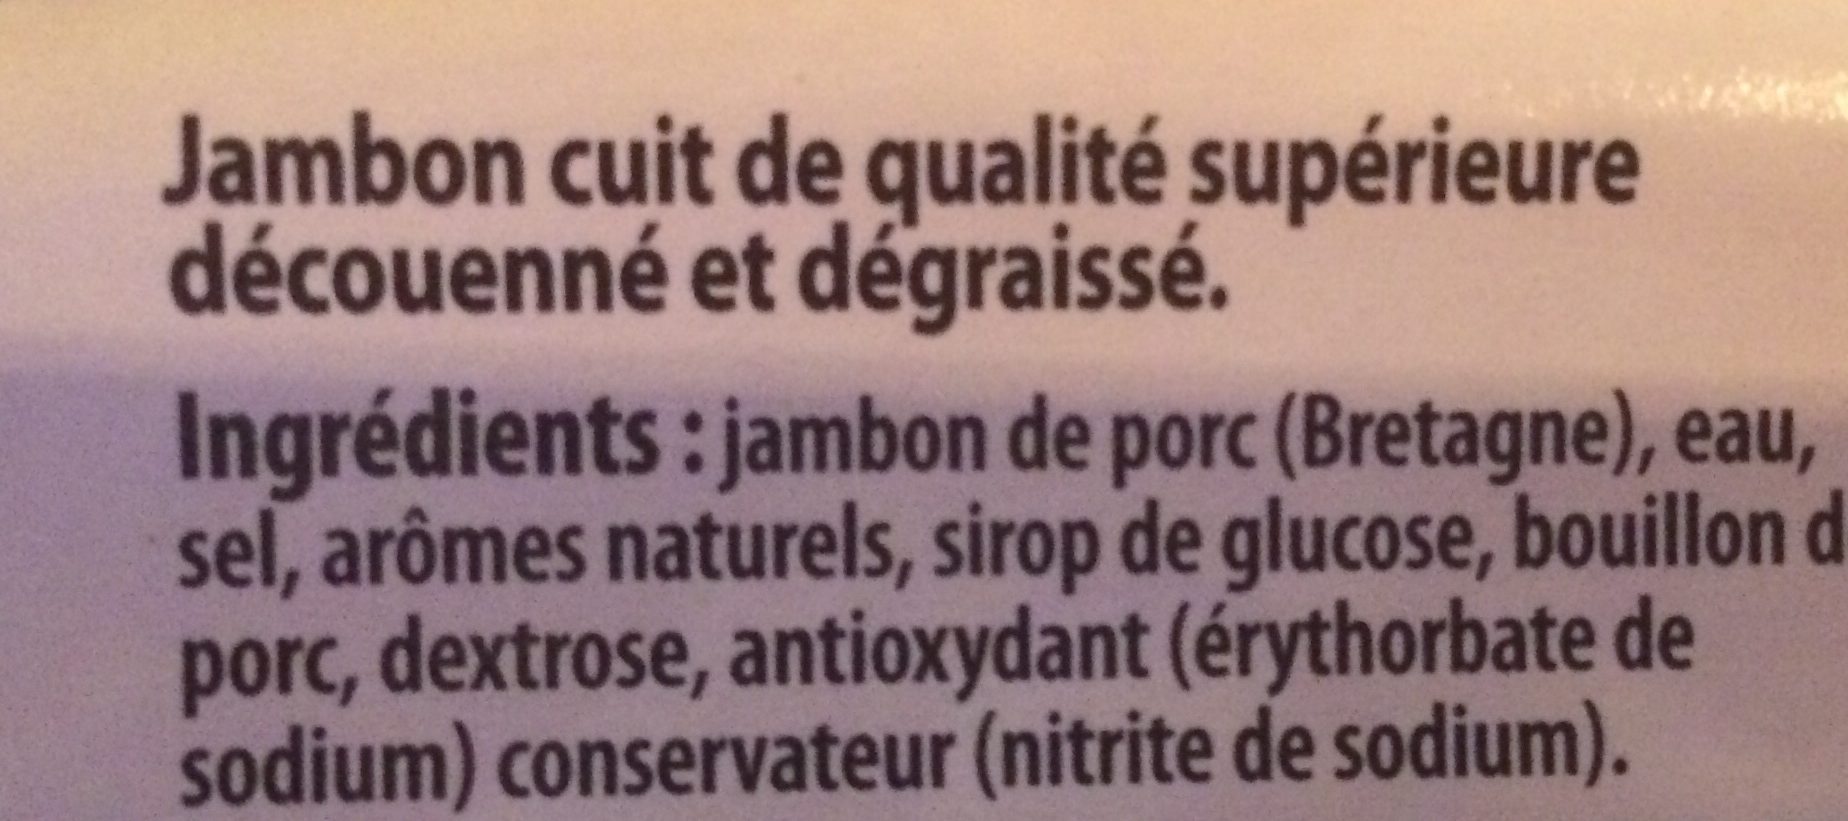 Le bon jambon bret.c.sup.découe.dégrai.TERRE BREIZH - Ingrédients